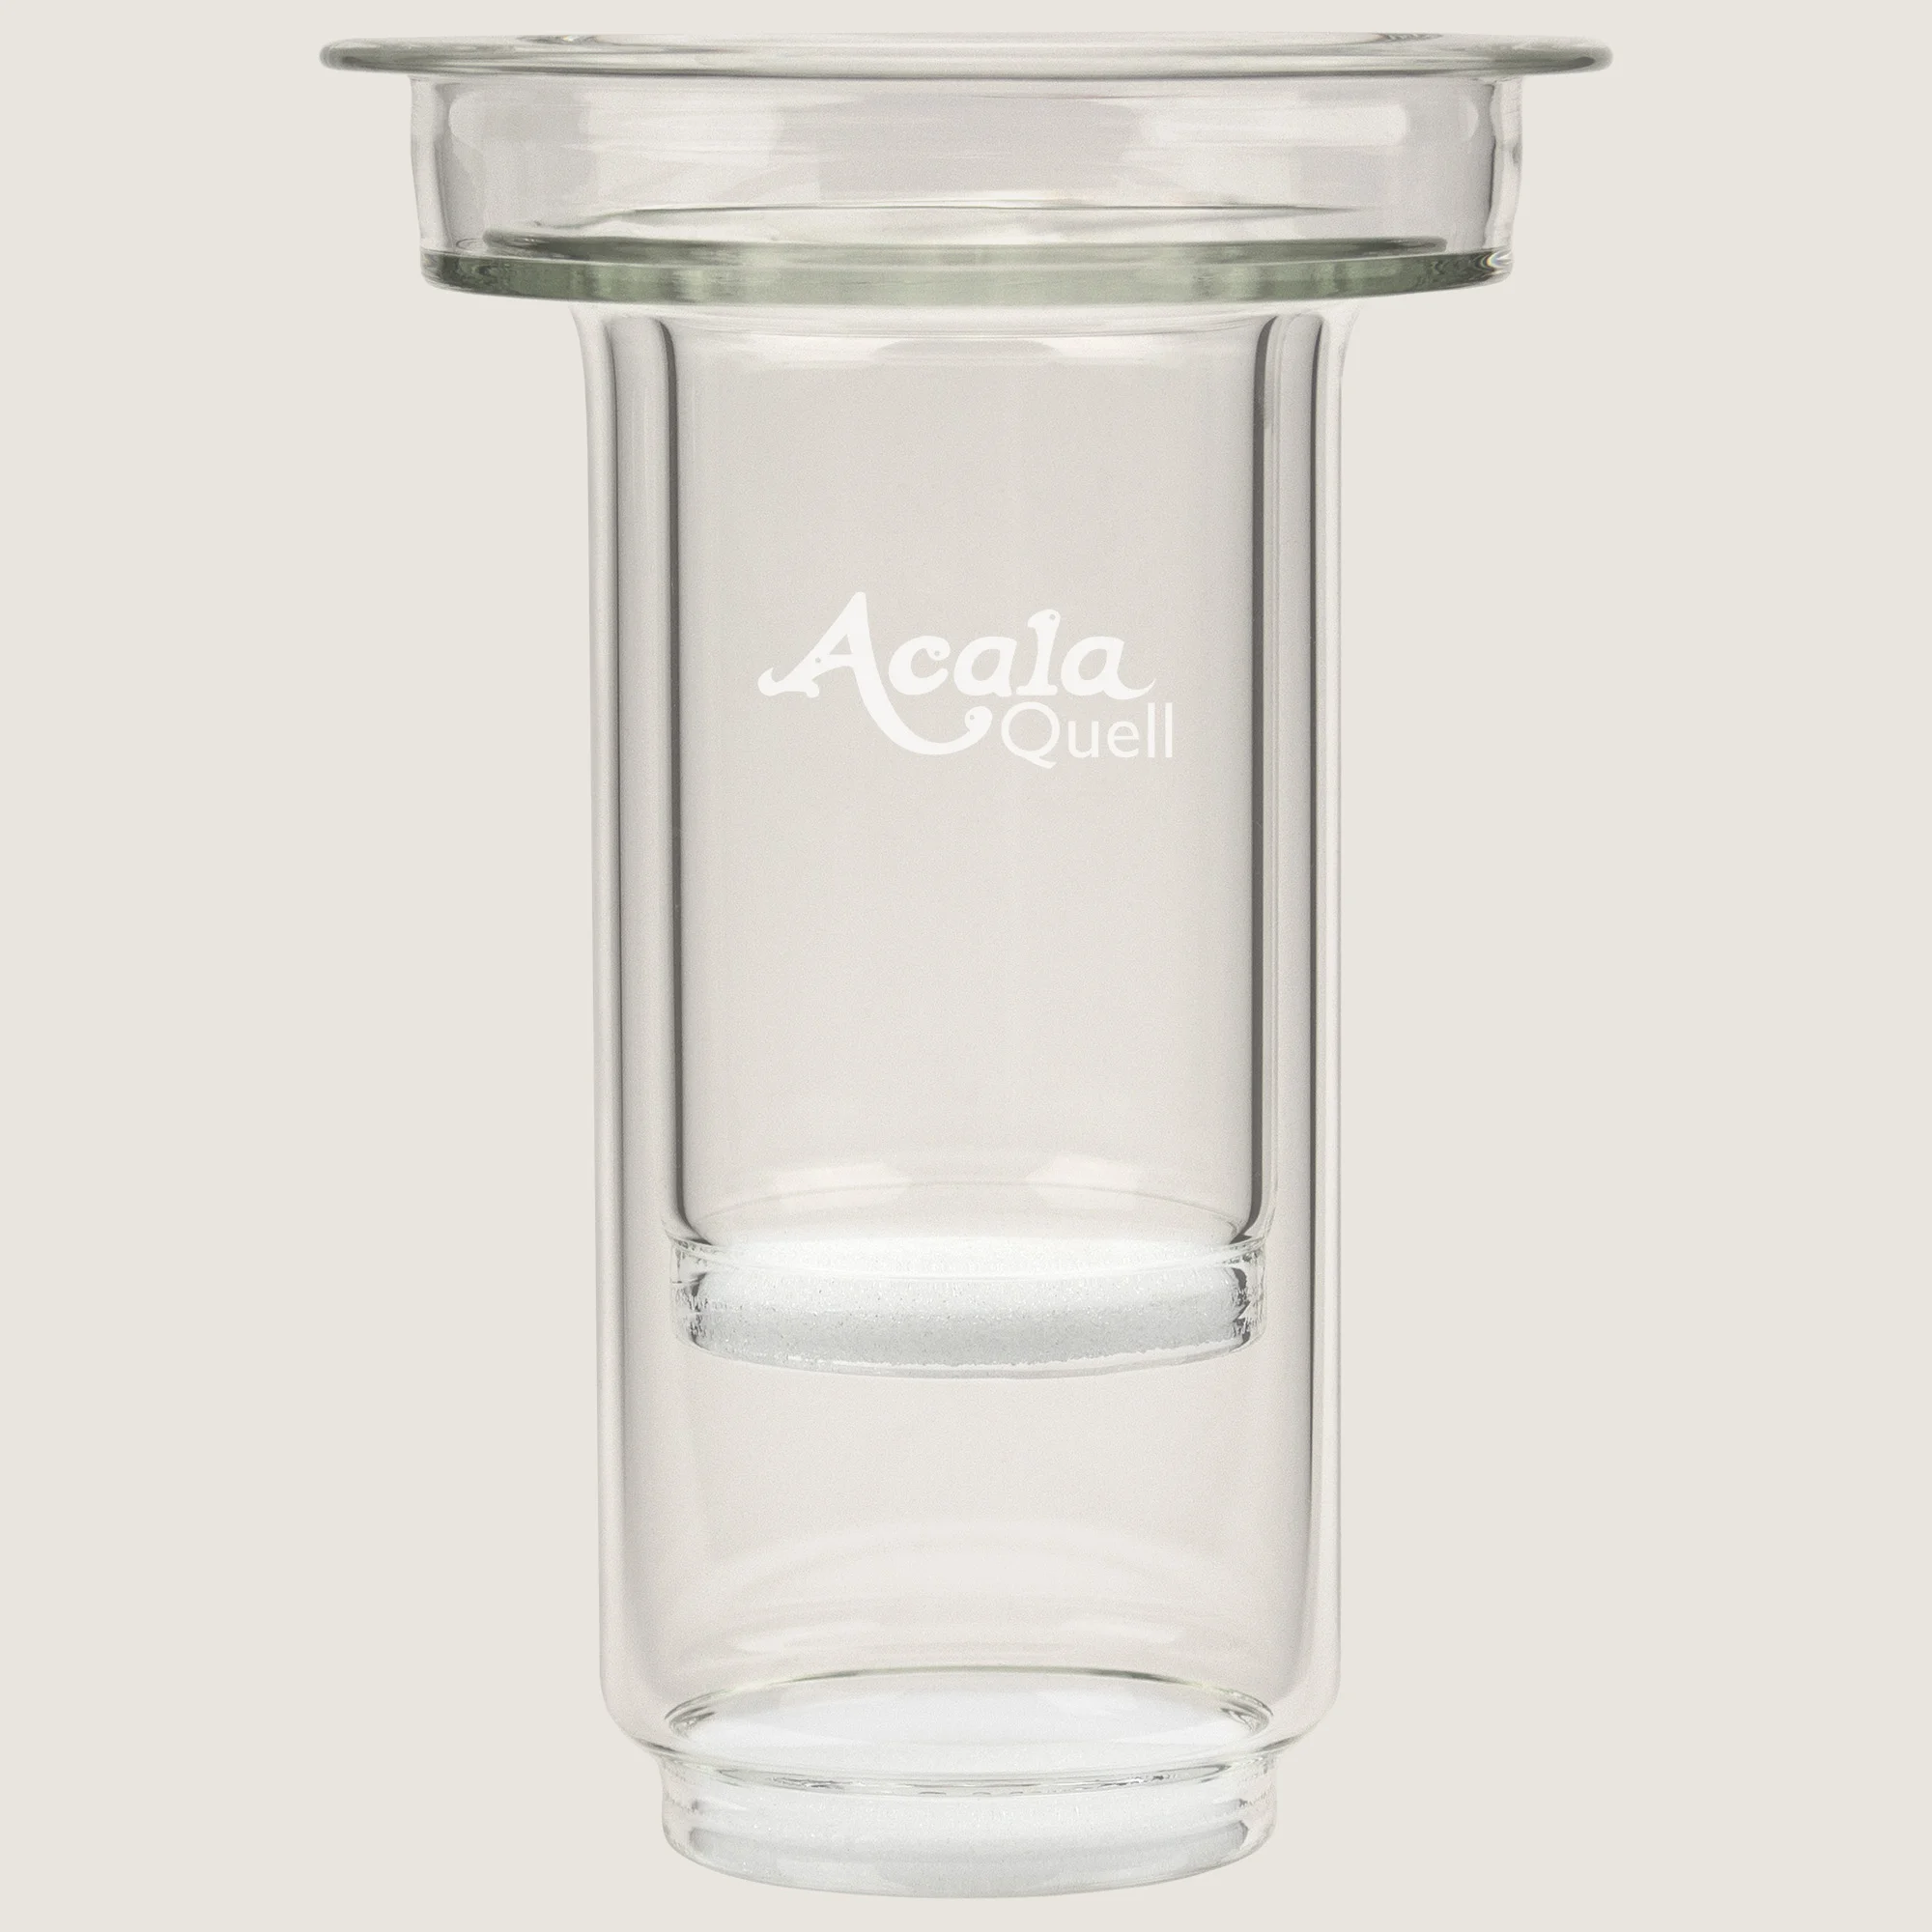 Man sieht die AcalaQuell Glaskartusche. Das Glas ist kristallklar, vorne ist klein das Acala Logo eingraviert.